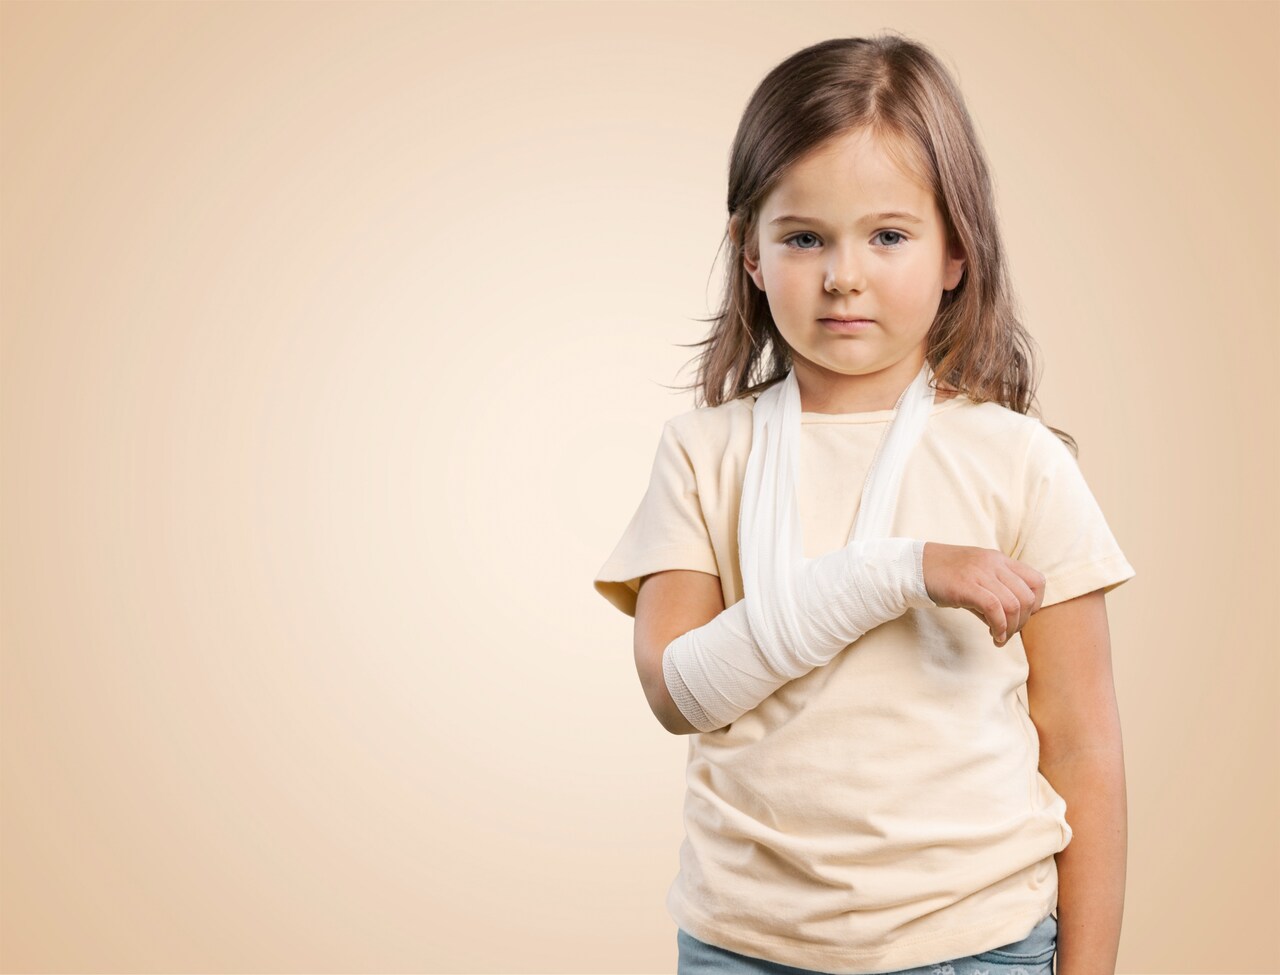 Ortopedia Goiânia - Fraturas em crianças: quais os cuidados necessários?